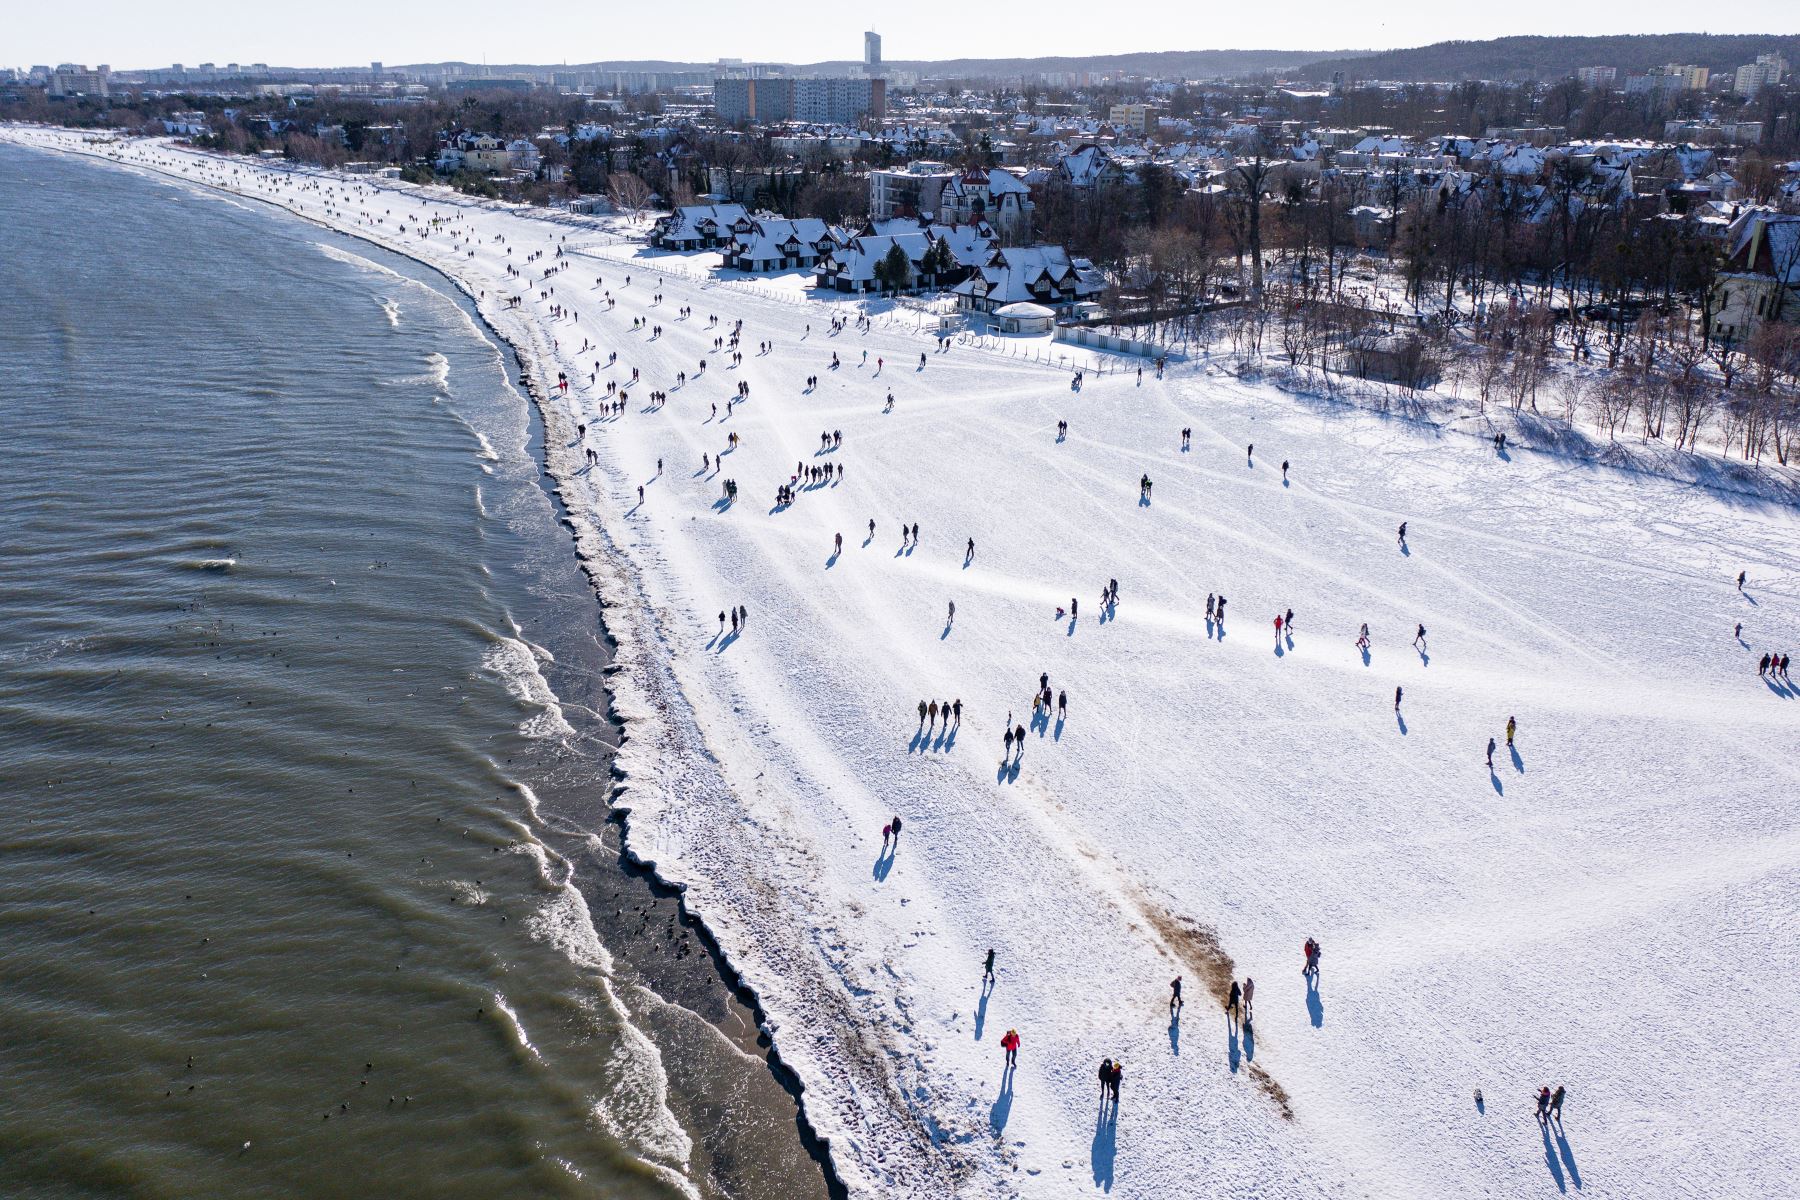 La vista aérea tomada el 14 de febrero de 2021 muestra multitudes de turistas en la playa helada de Sopot, Polonia, después de que partes de las restricciones relacionadas con la nueva pandemia de coronavirus. Foto: AFP